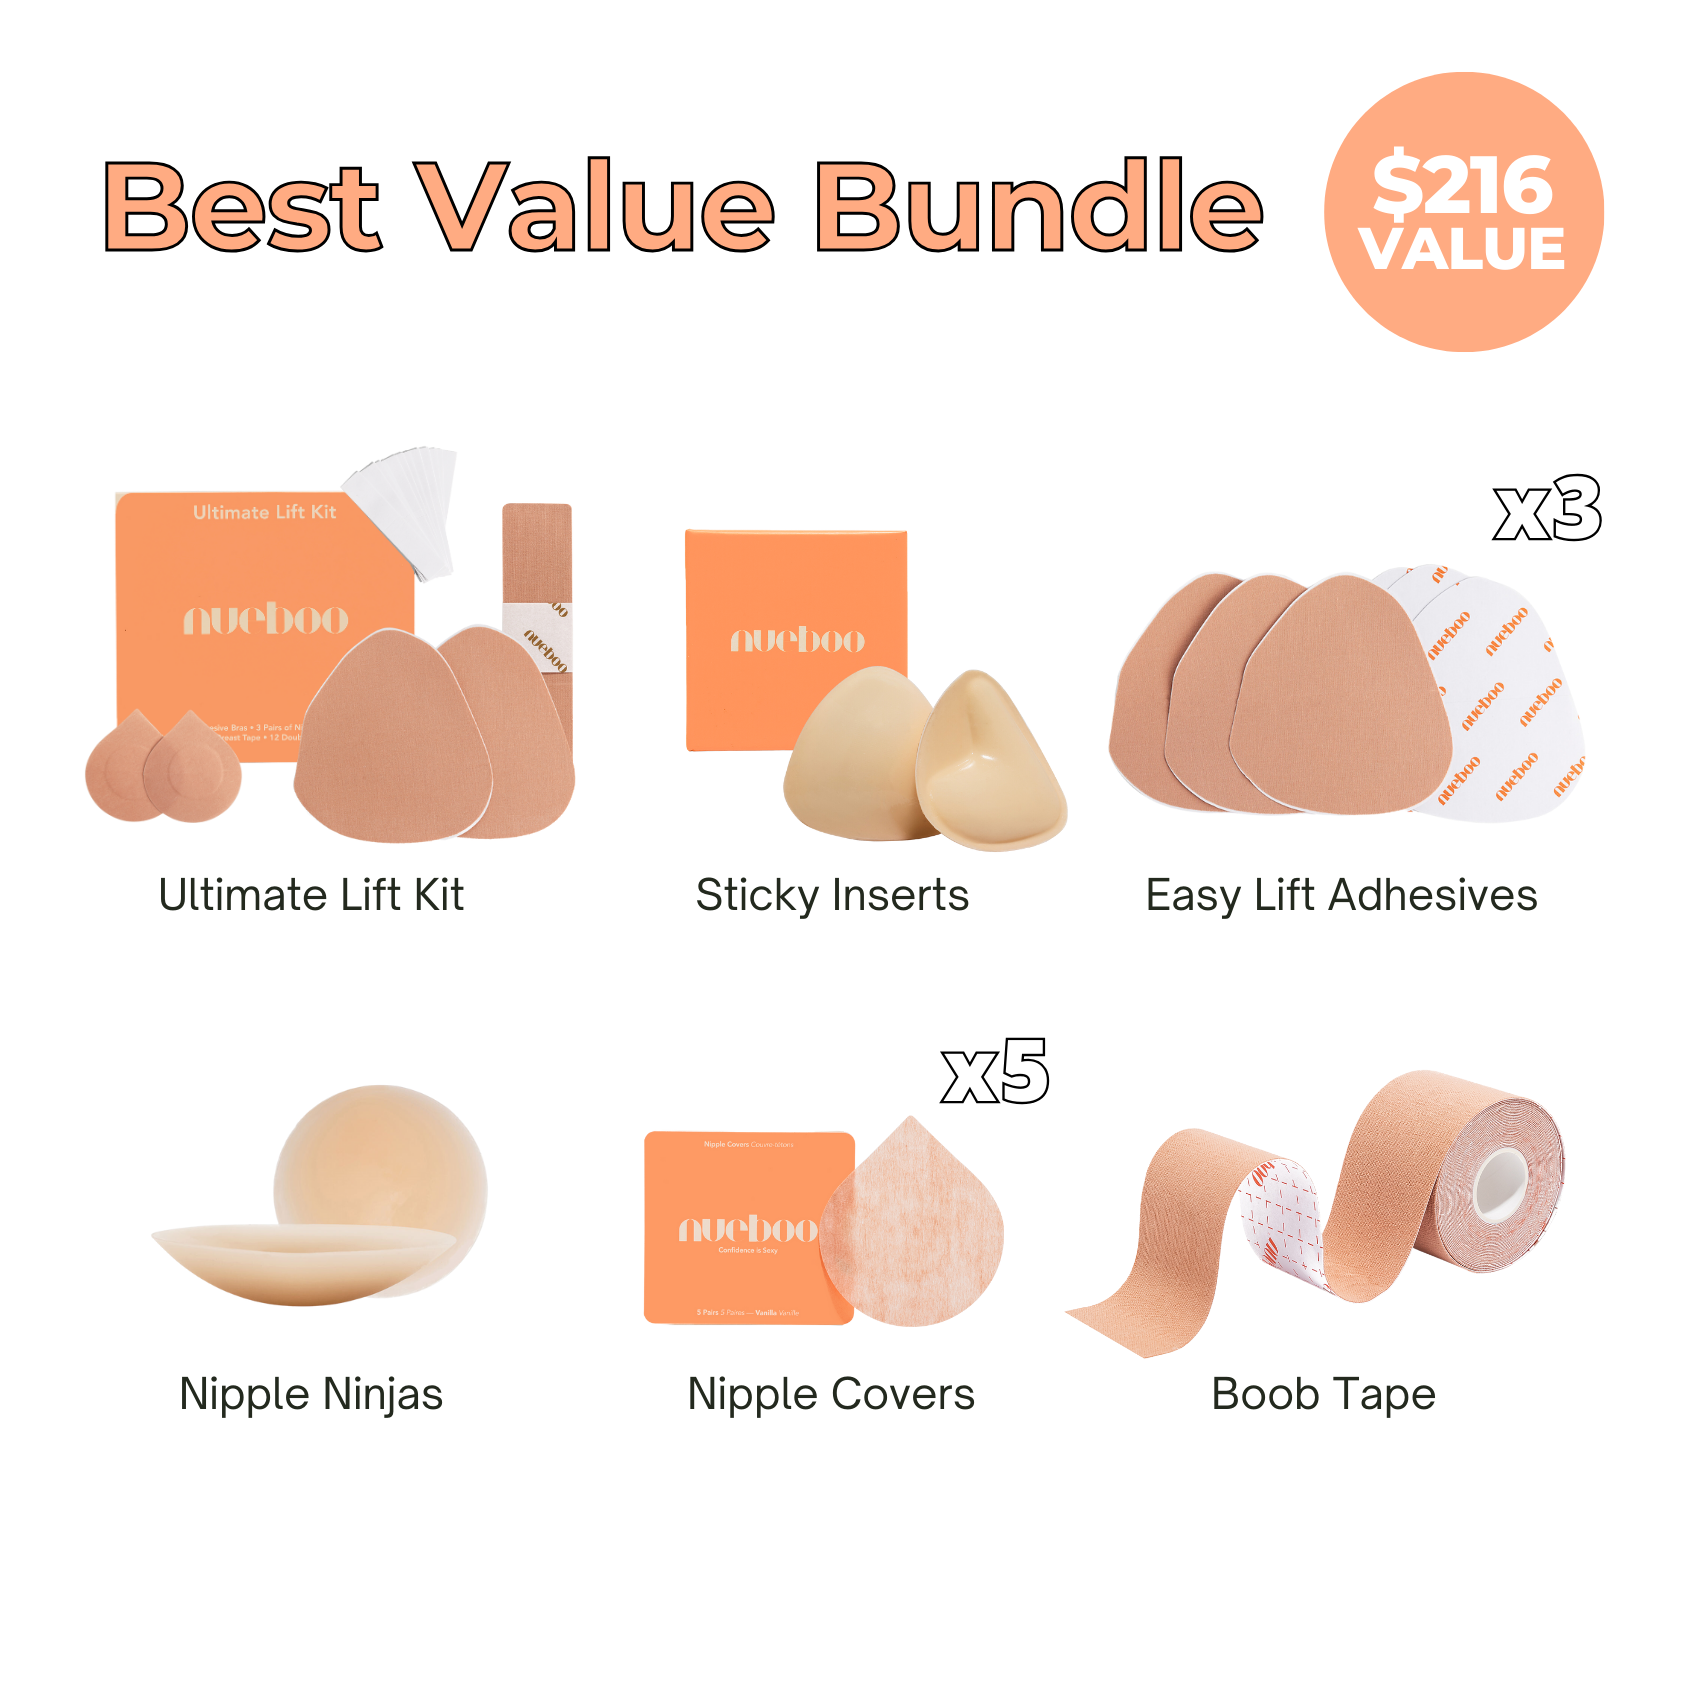 Best Value Bundle – Nueboo